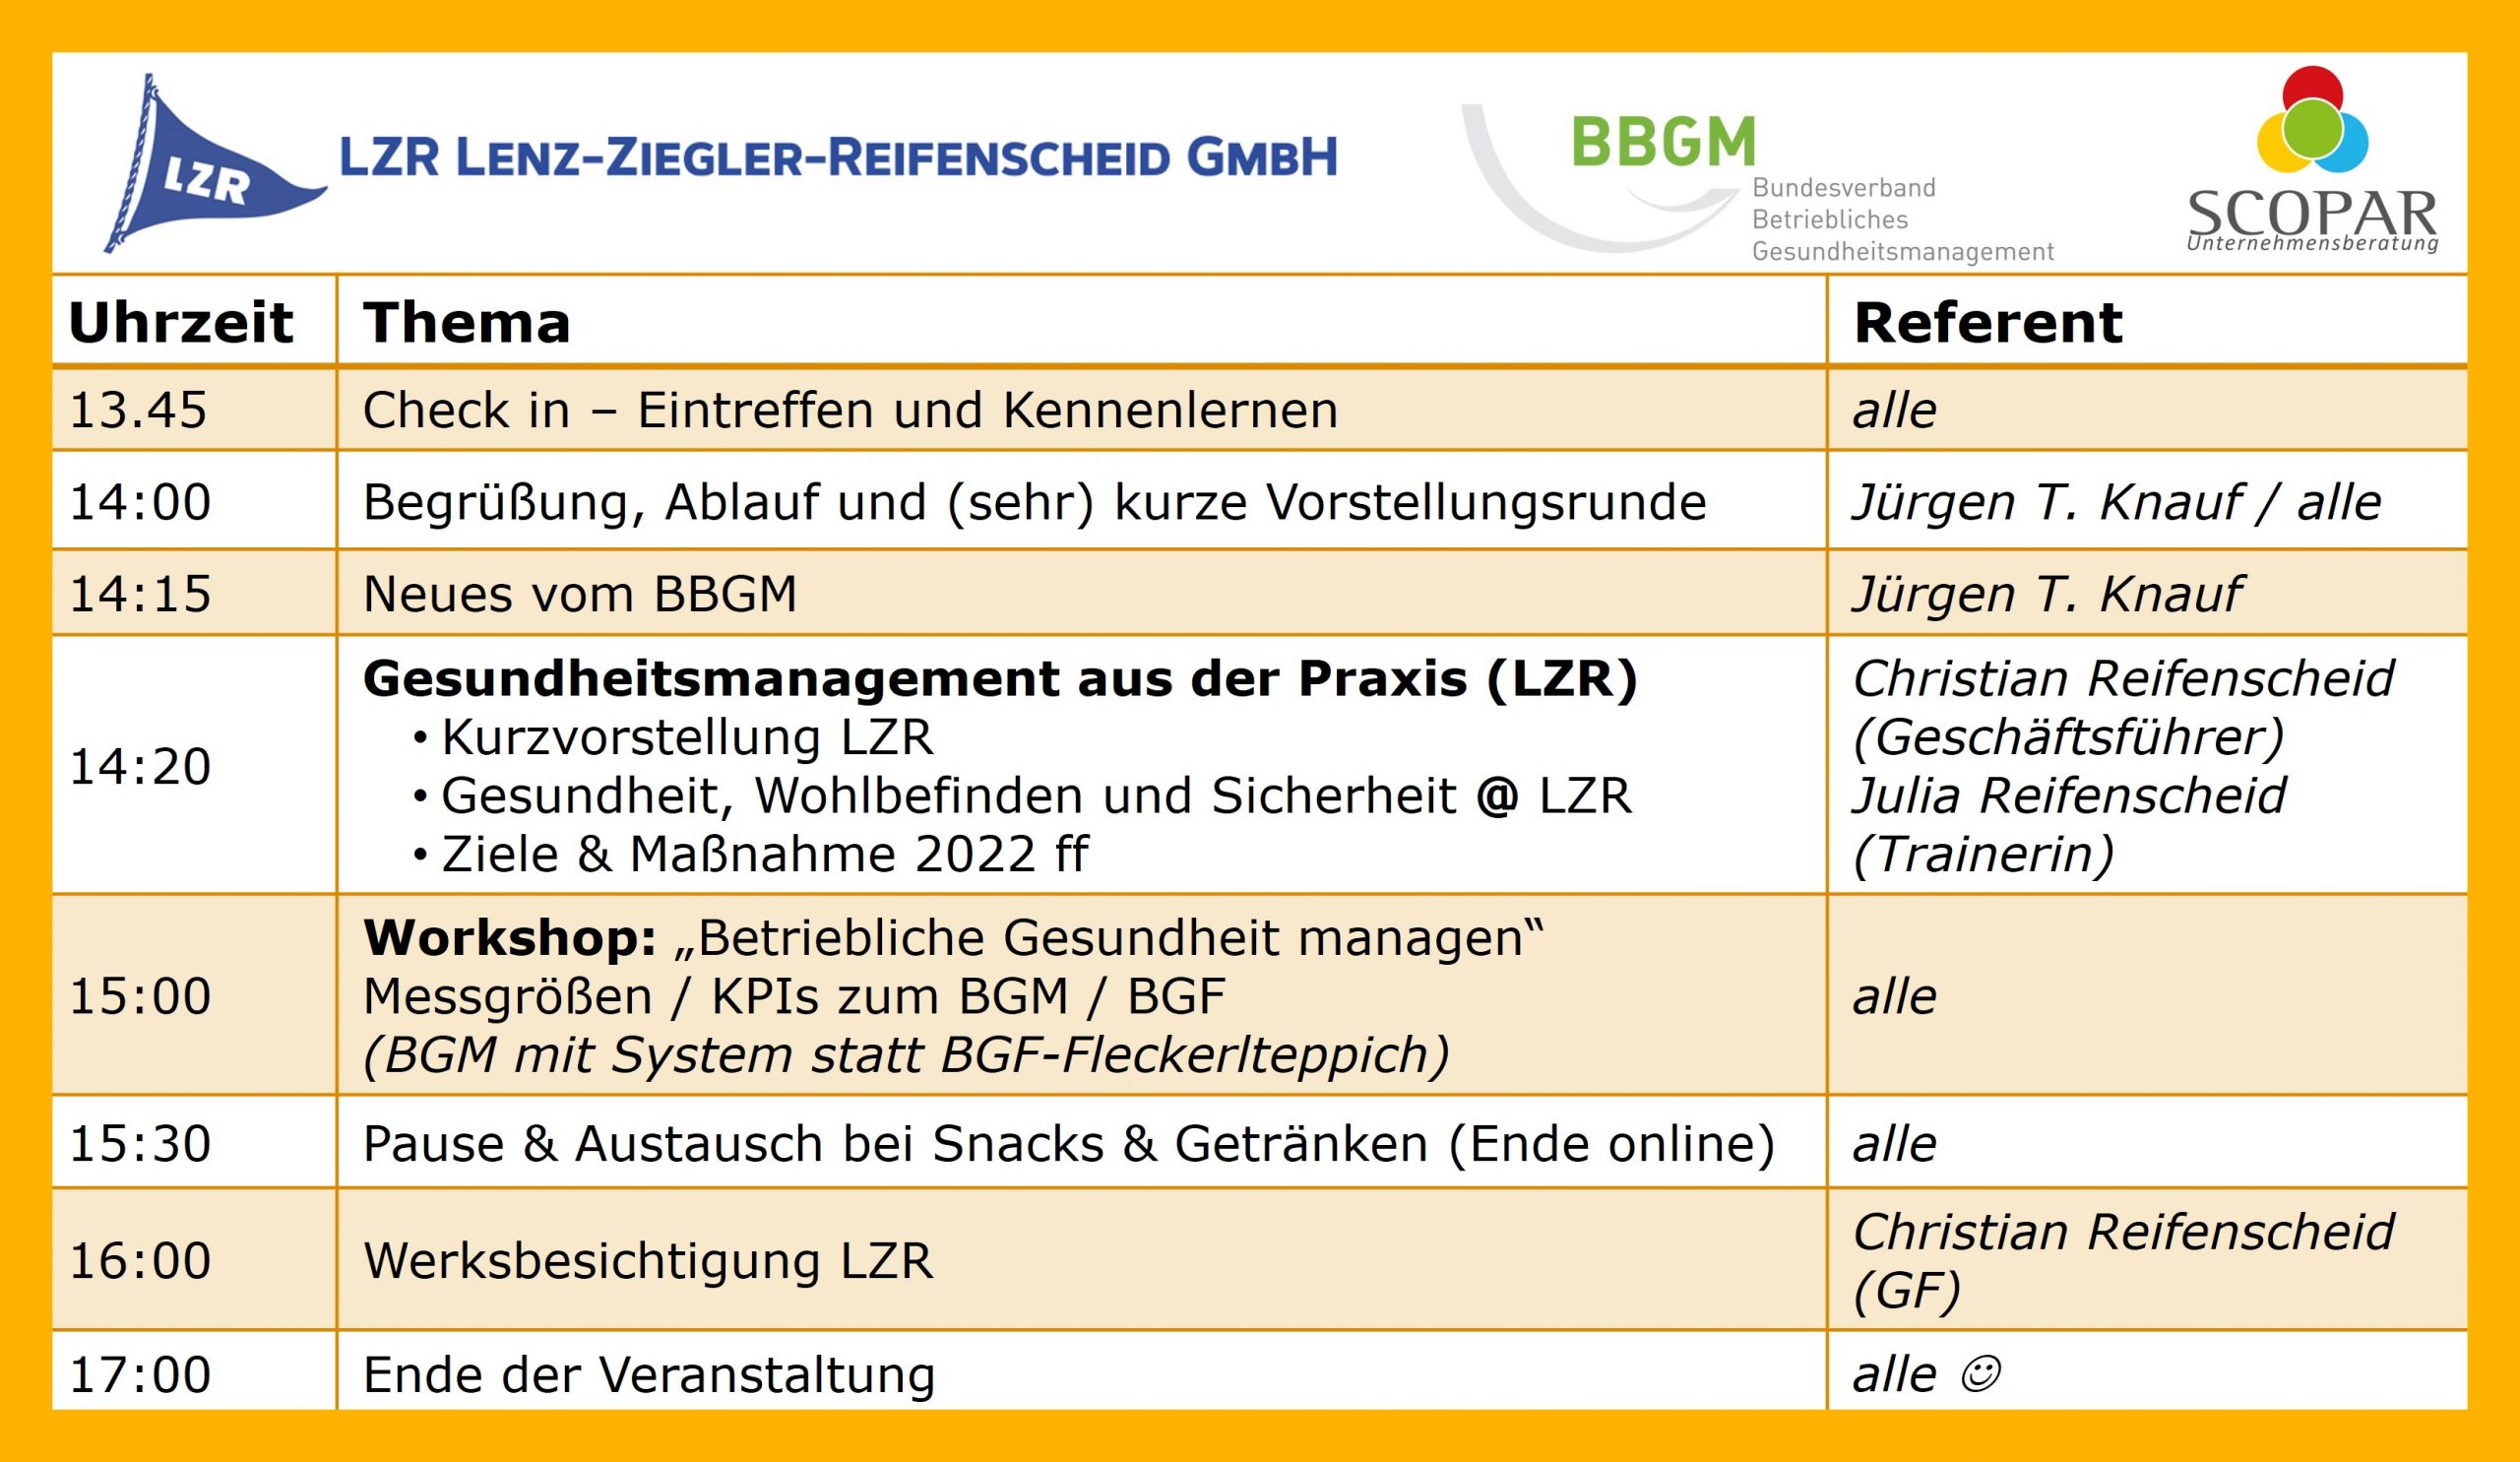 13.09.2022 (14:00 – 17:00 Uhr) Hybrid-Event des BBGM e.V.: Regionaltreffen bei LZR Lenz-Ziegler-Reifenscheid GmbH in Kitzingen